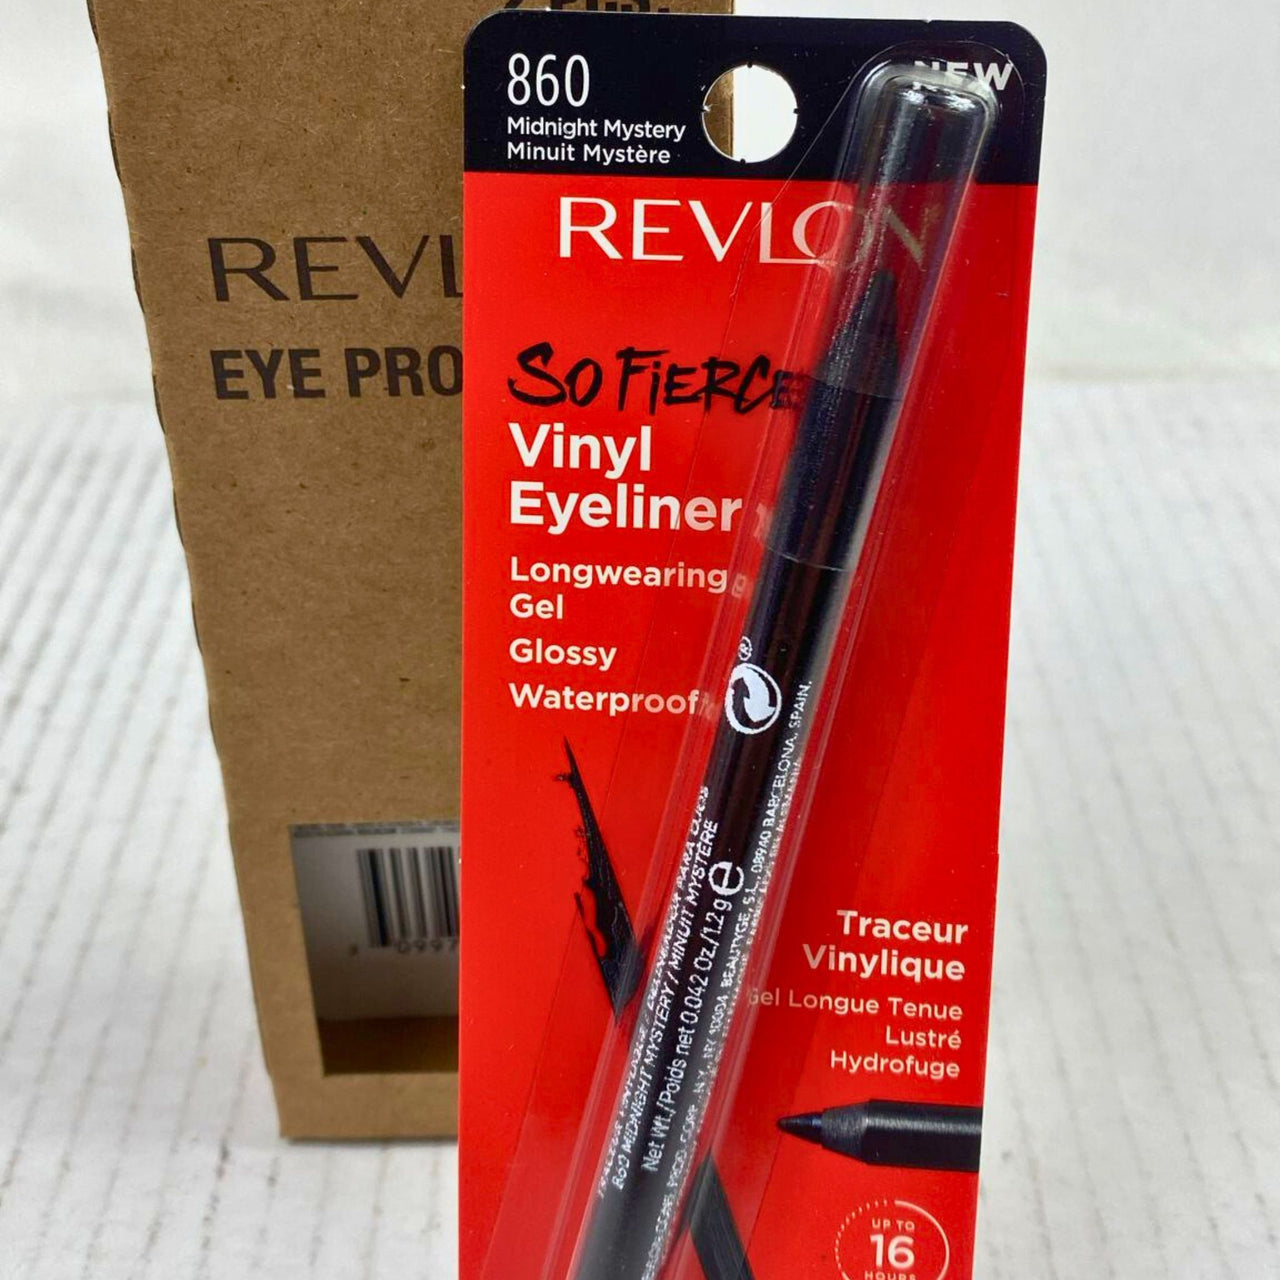 Revlon So Fierce Vinyl Eyeliner Longwearing Gel Glossy